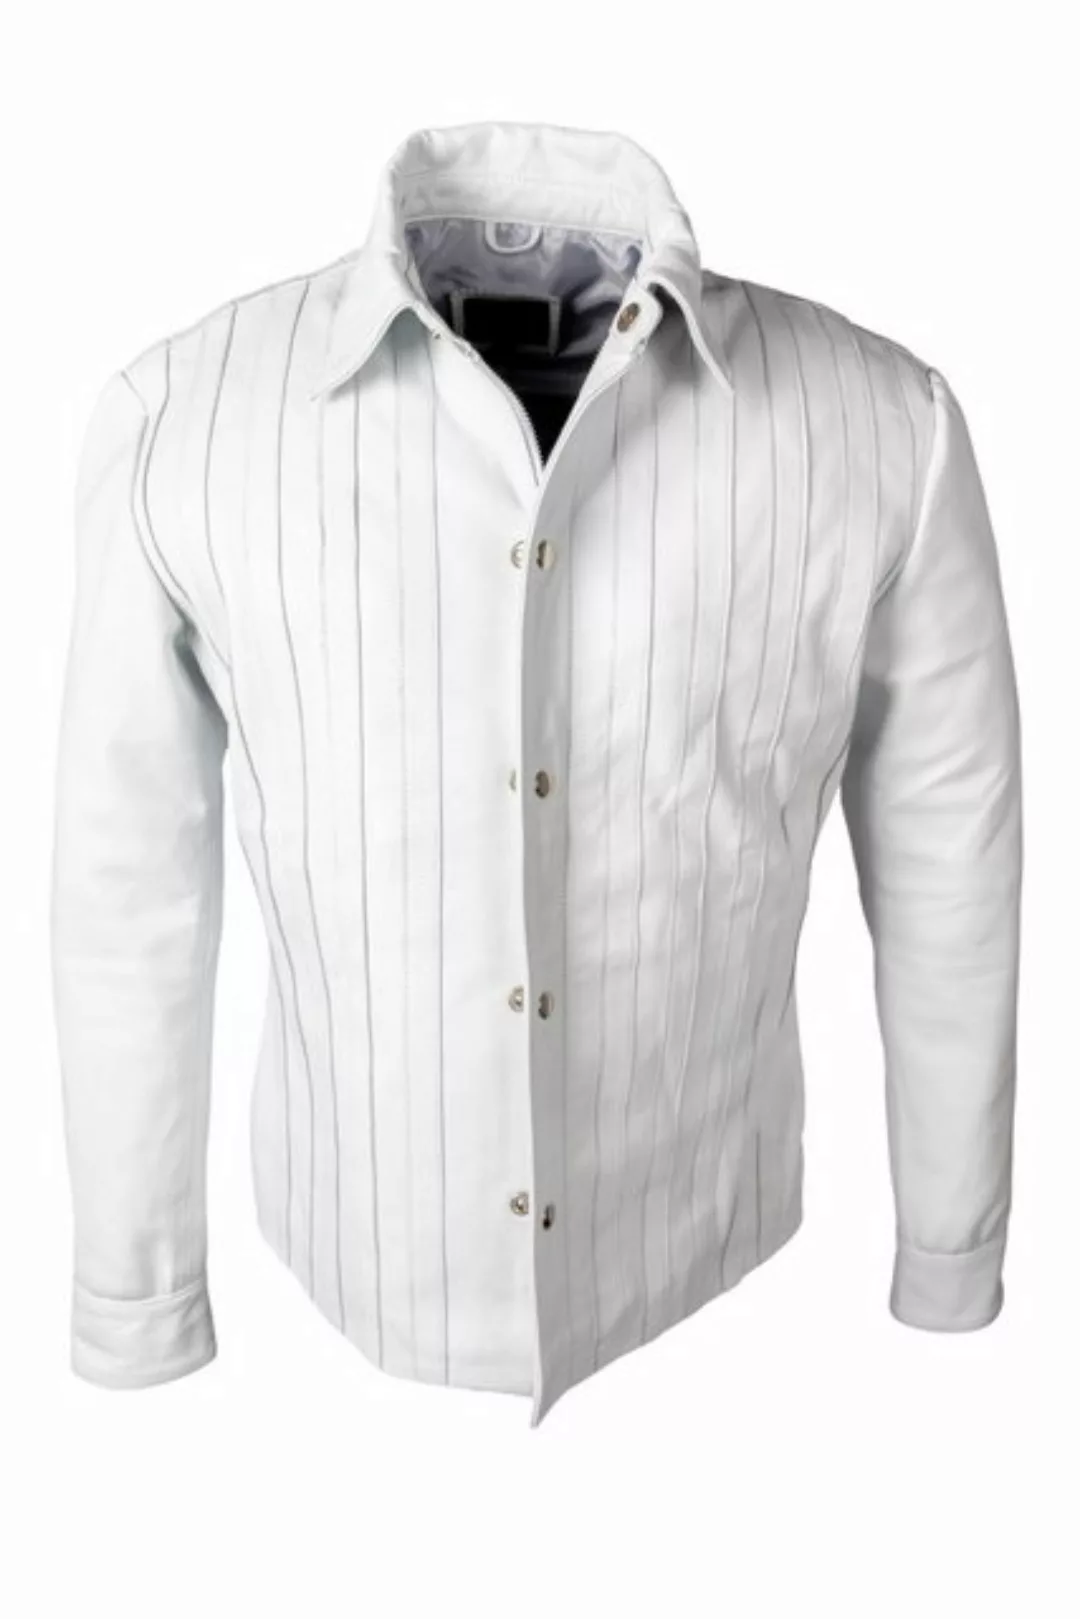 Be Noble Lederjacke Lissabon für Damen Damen Lederbluse/ Jacke in weiß mit günstig online kaufen